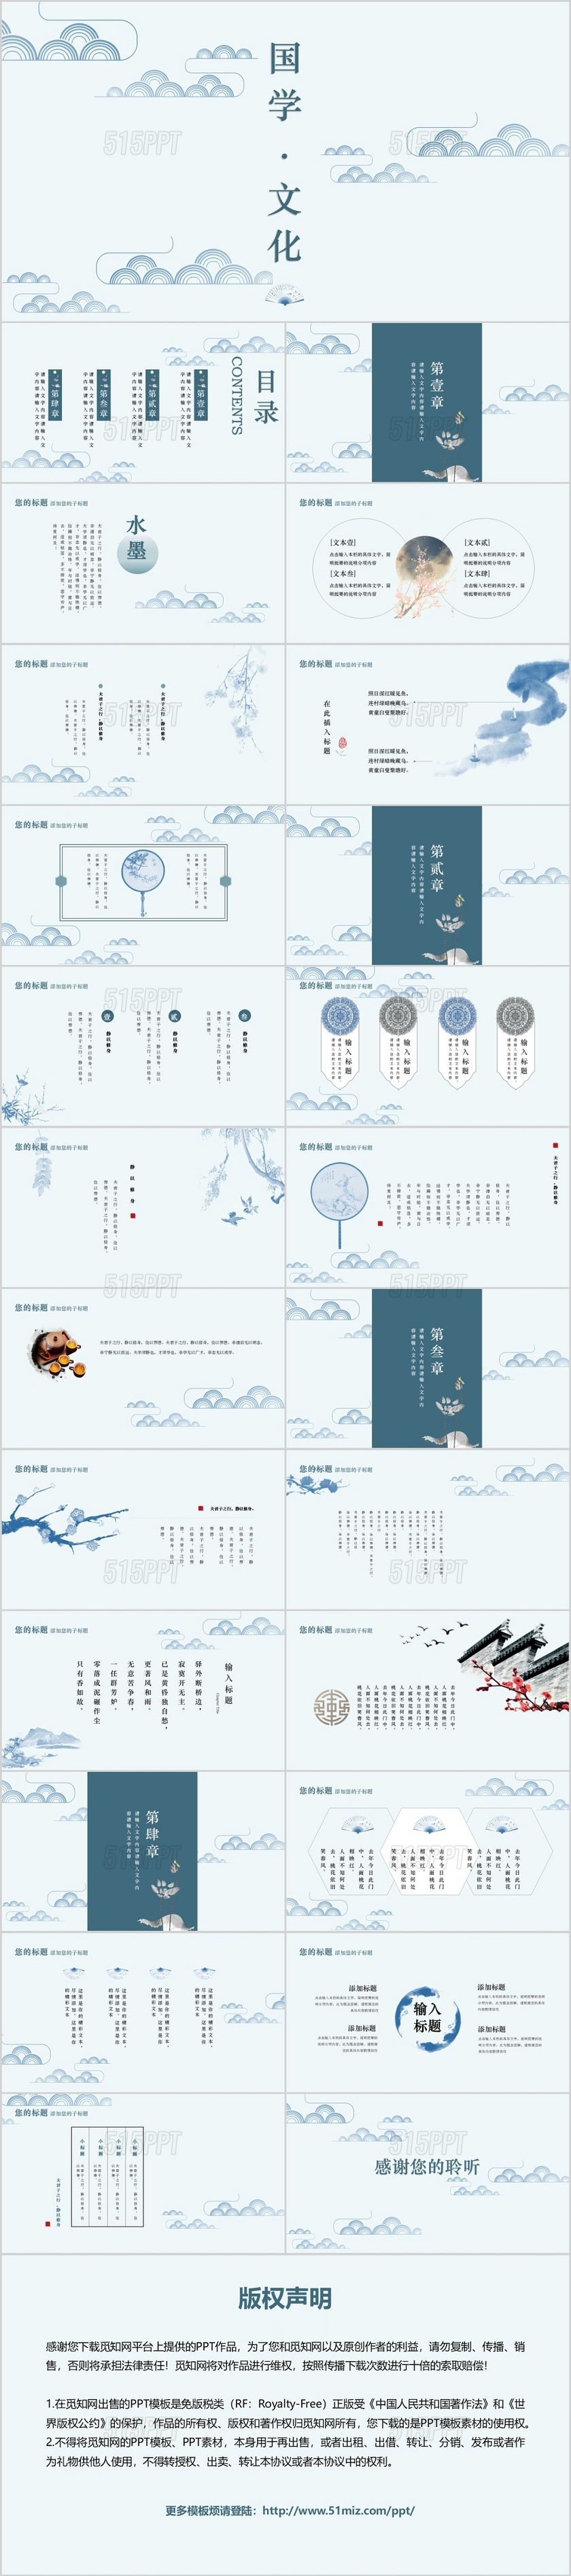 淡蓝色中国风古风风格国学文化主题PPT模板